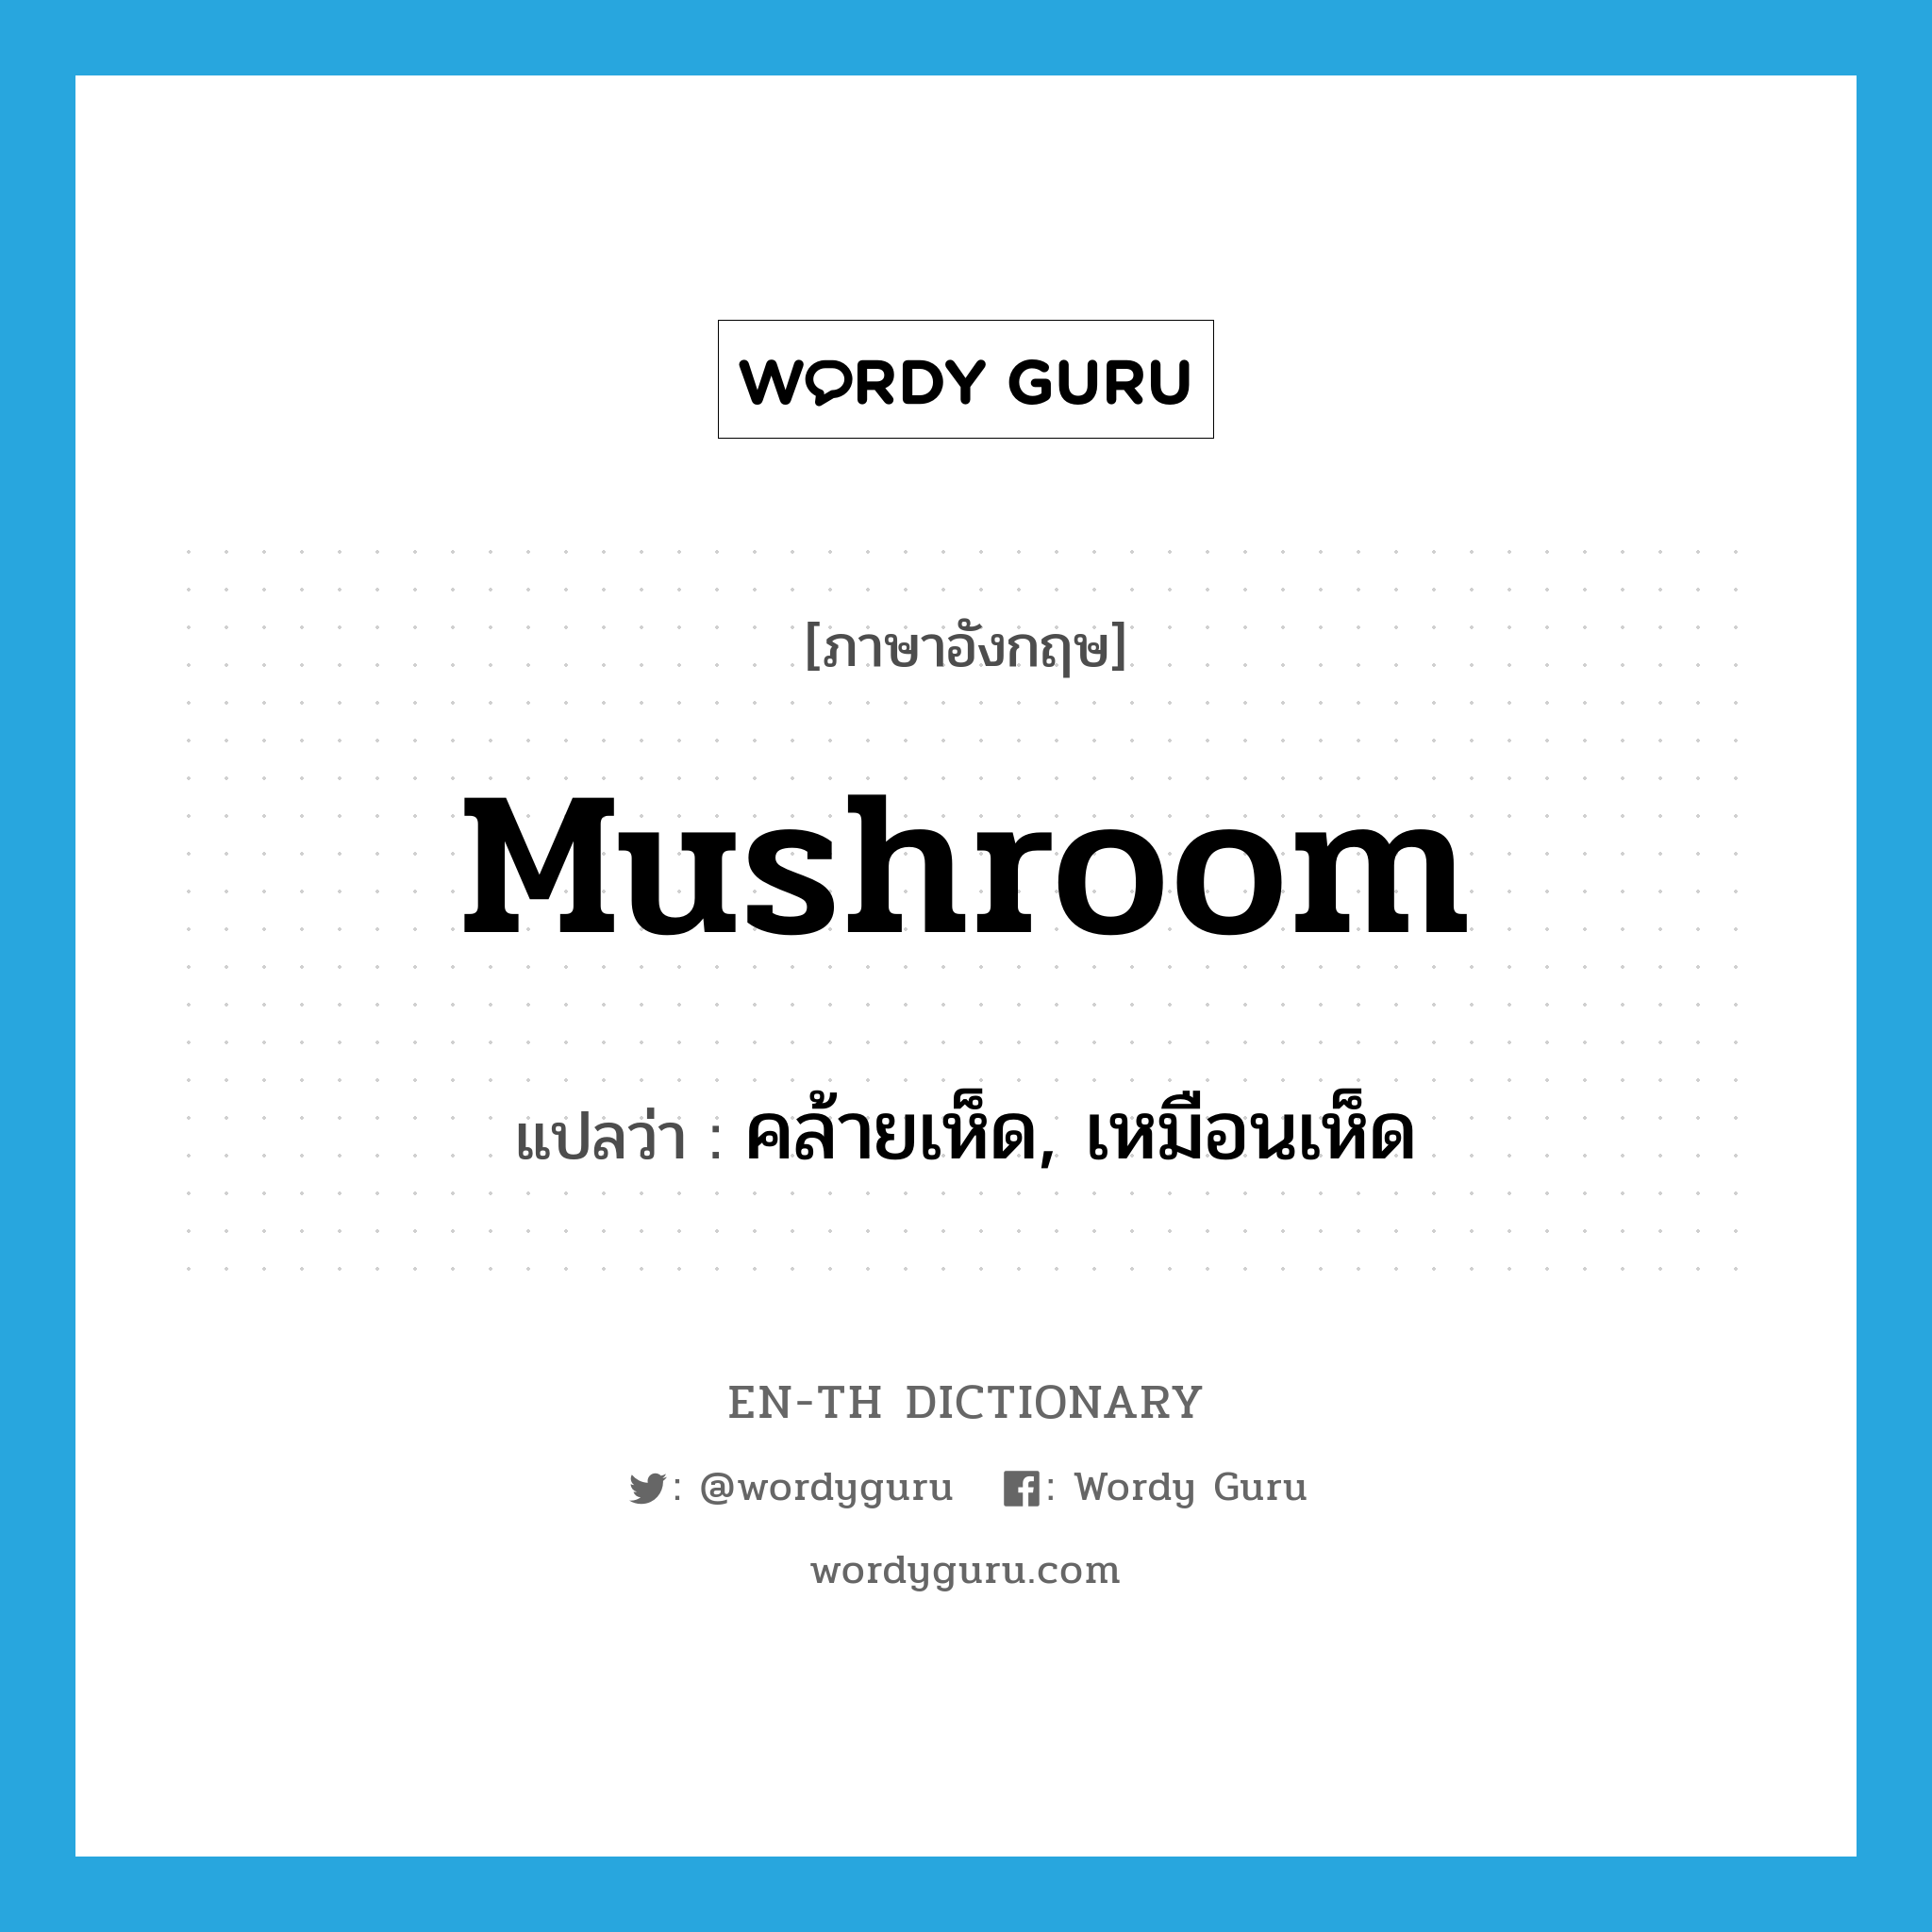 คล้ายเห็ด, เหมือนเห็ด ภาษาอังกฤษ?, คำศัพท์ภาษาอังกฤษ คล้ายเห็ด, เหมือนเห็ด แปลว่า mushroom ประเภท ADJ หมวด ADJ